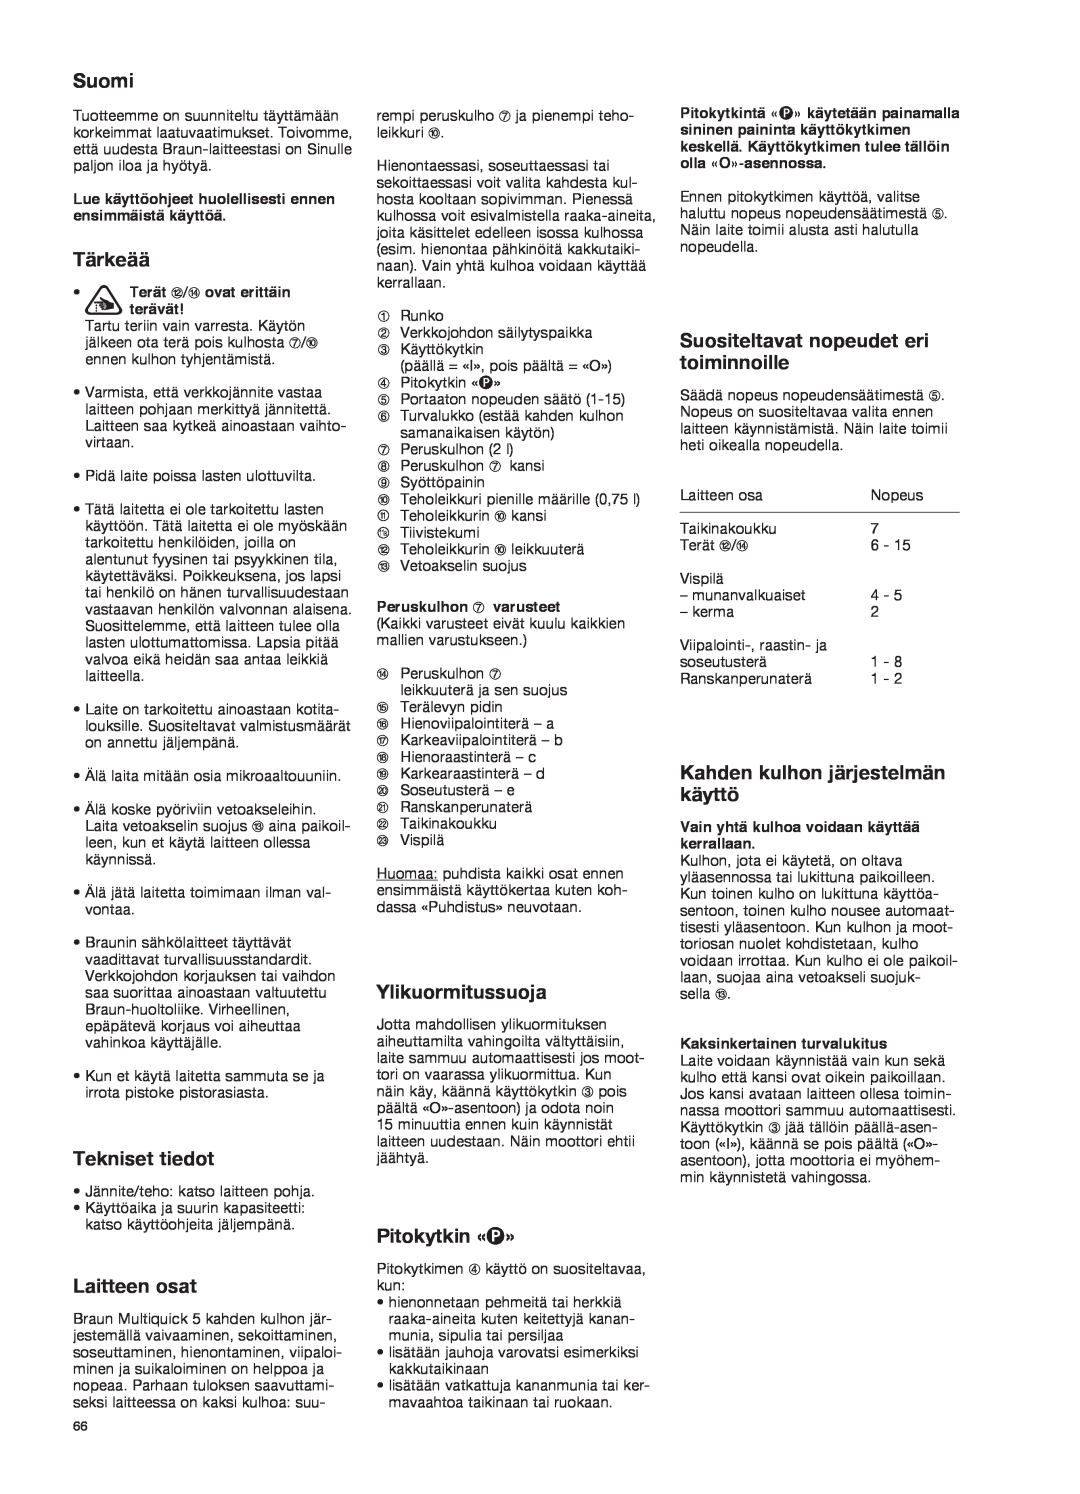 Braun K 700 black manual Suomi, Tärkeää, Tekniset tiedot, Laitteen osat, Ylikuormitussuoja, Pitokytkin «P» 